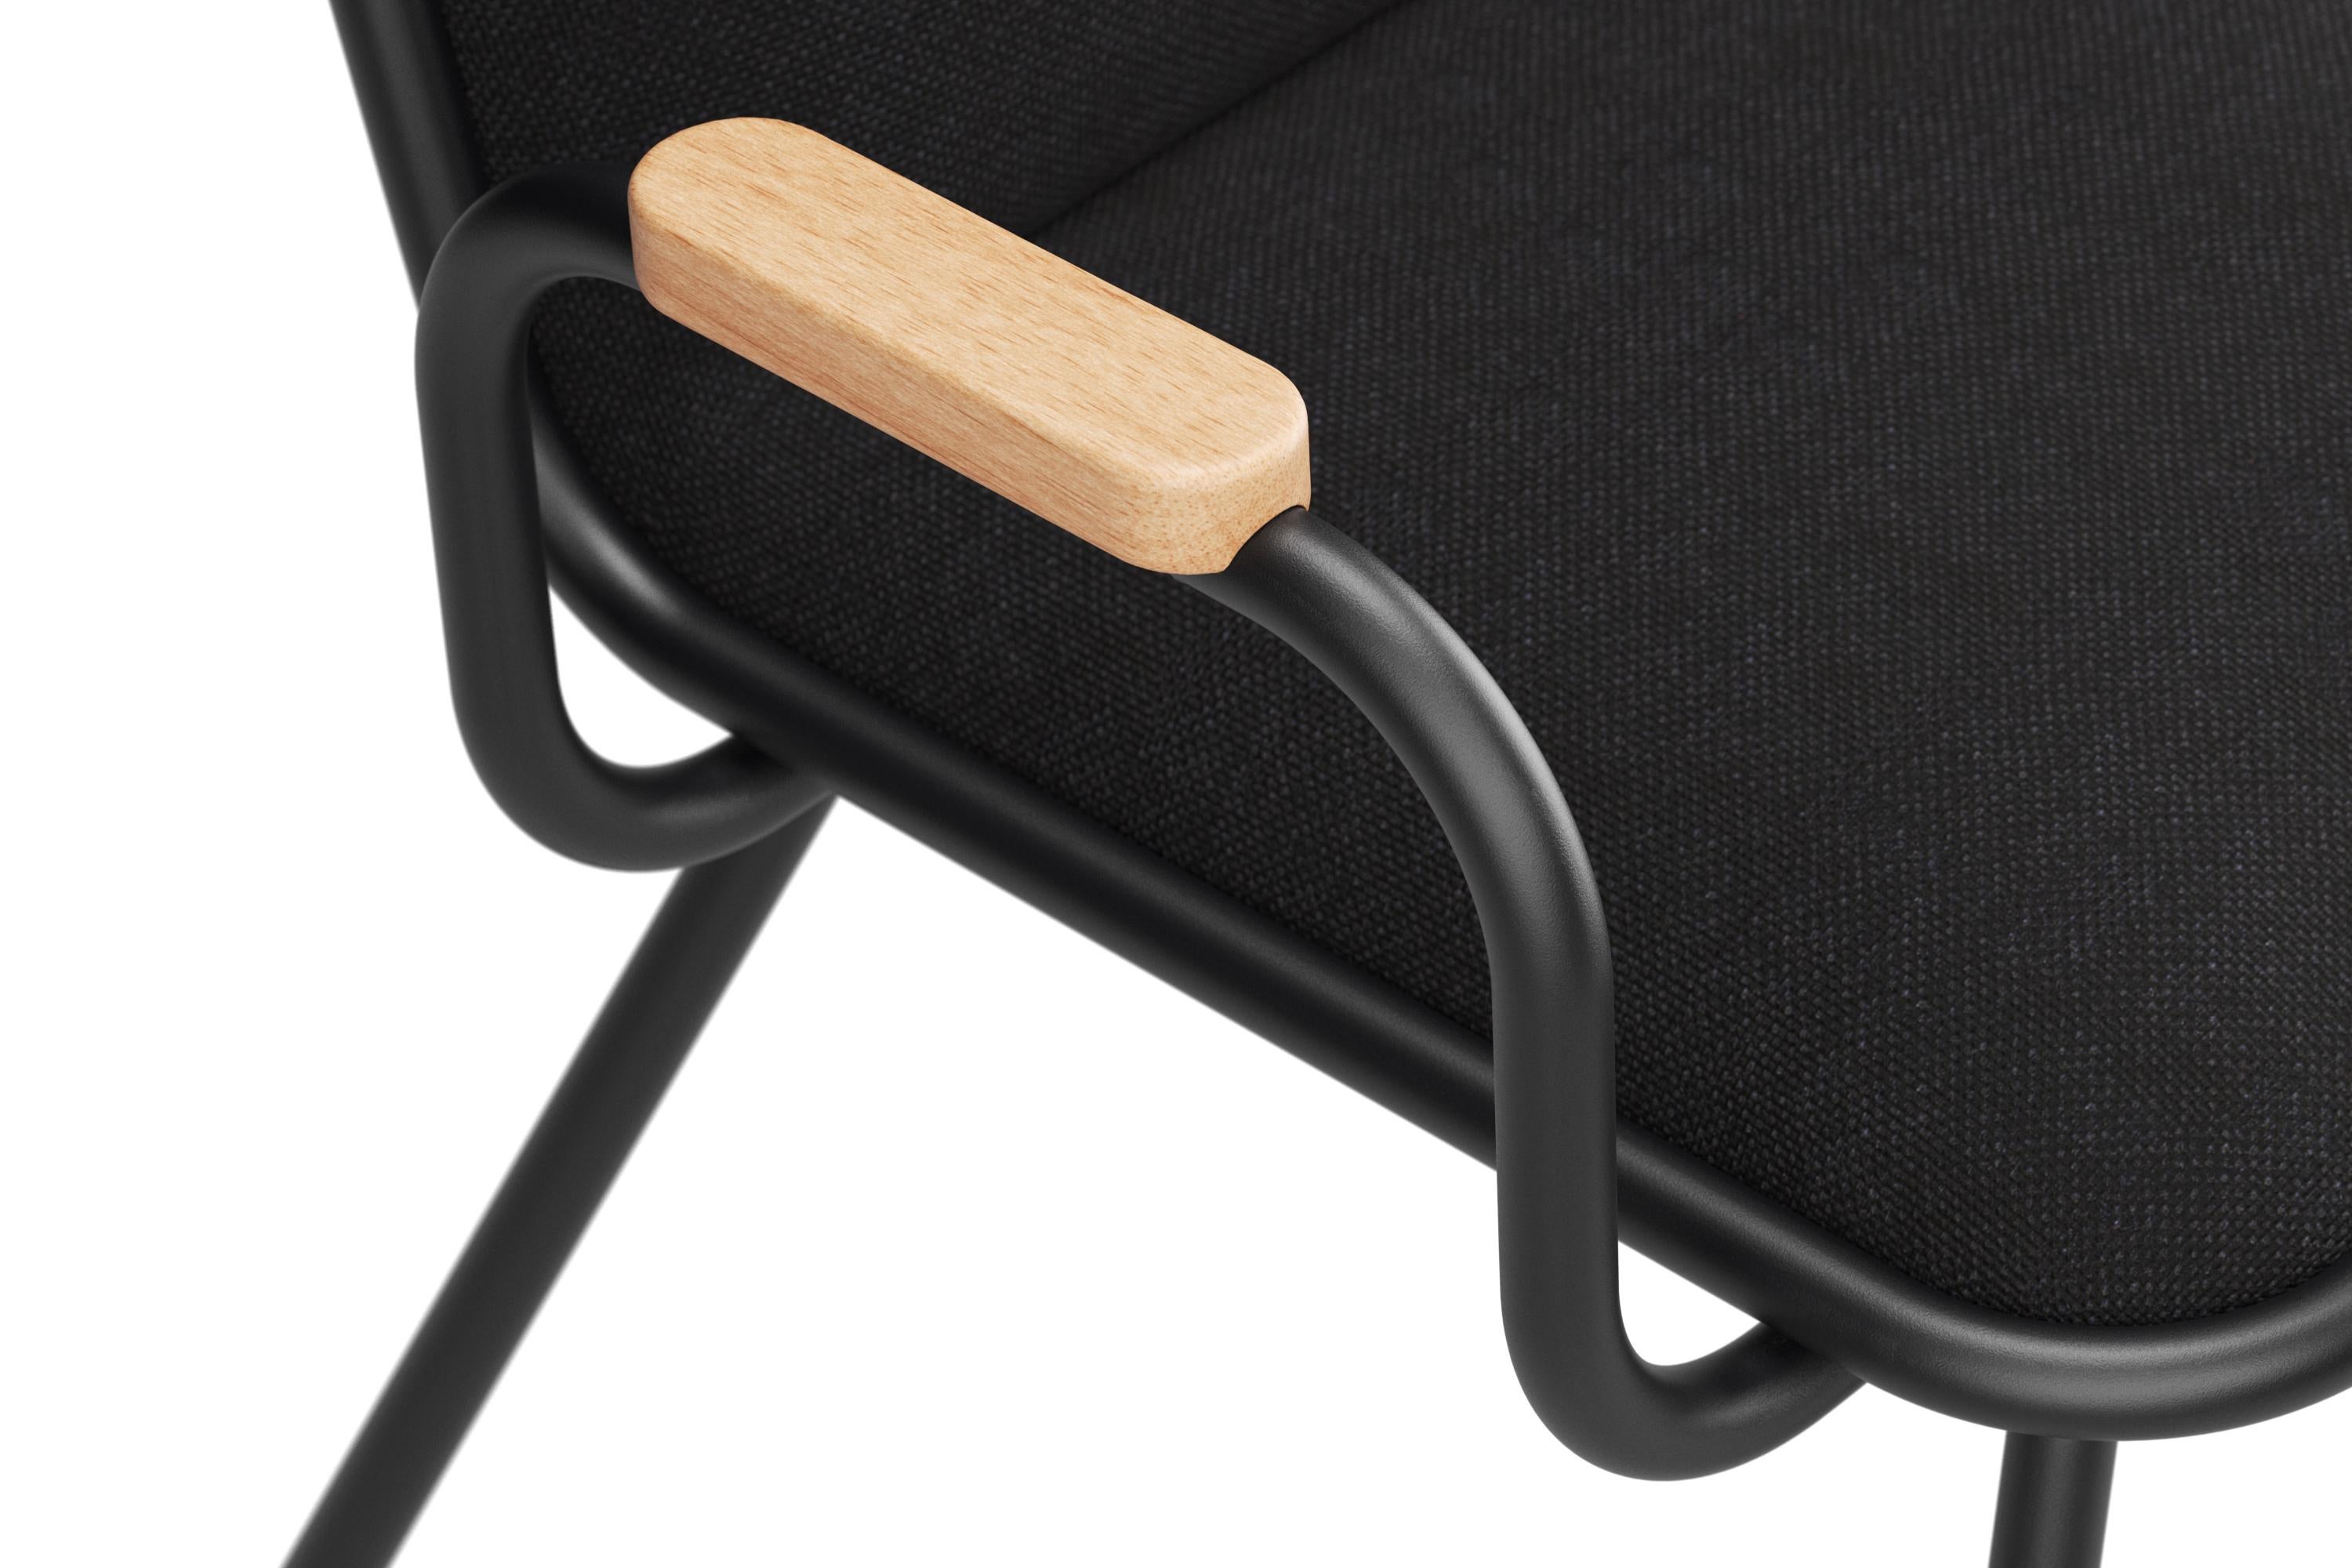 Der Dulwich-Stuhl mit Armlehnen ist eine Weiterentwicklung des klassischen Dulwich-Designs. Er bietet mehr Komfort und Halt, ohne seinen zeitlosen Charme zu verlieren. Das Gestell aus pulverbeschichtetem Metall bietet eine robuste Grundlage, während